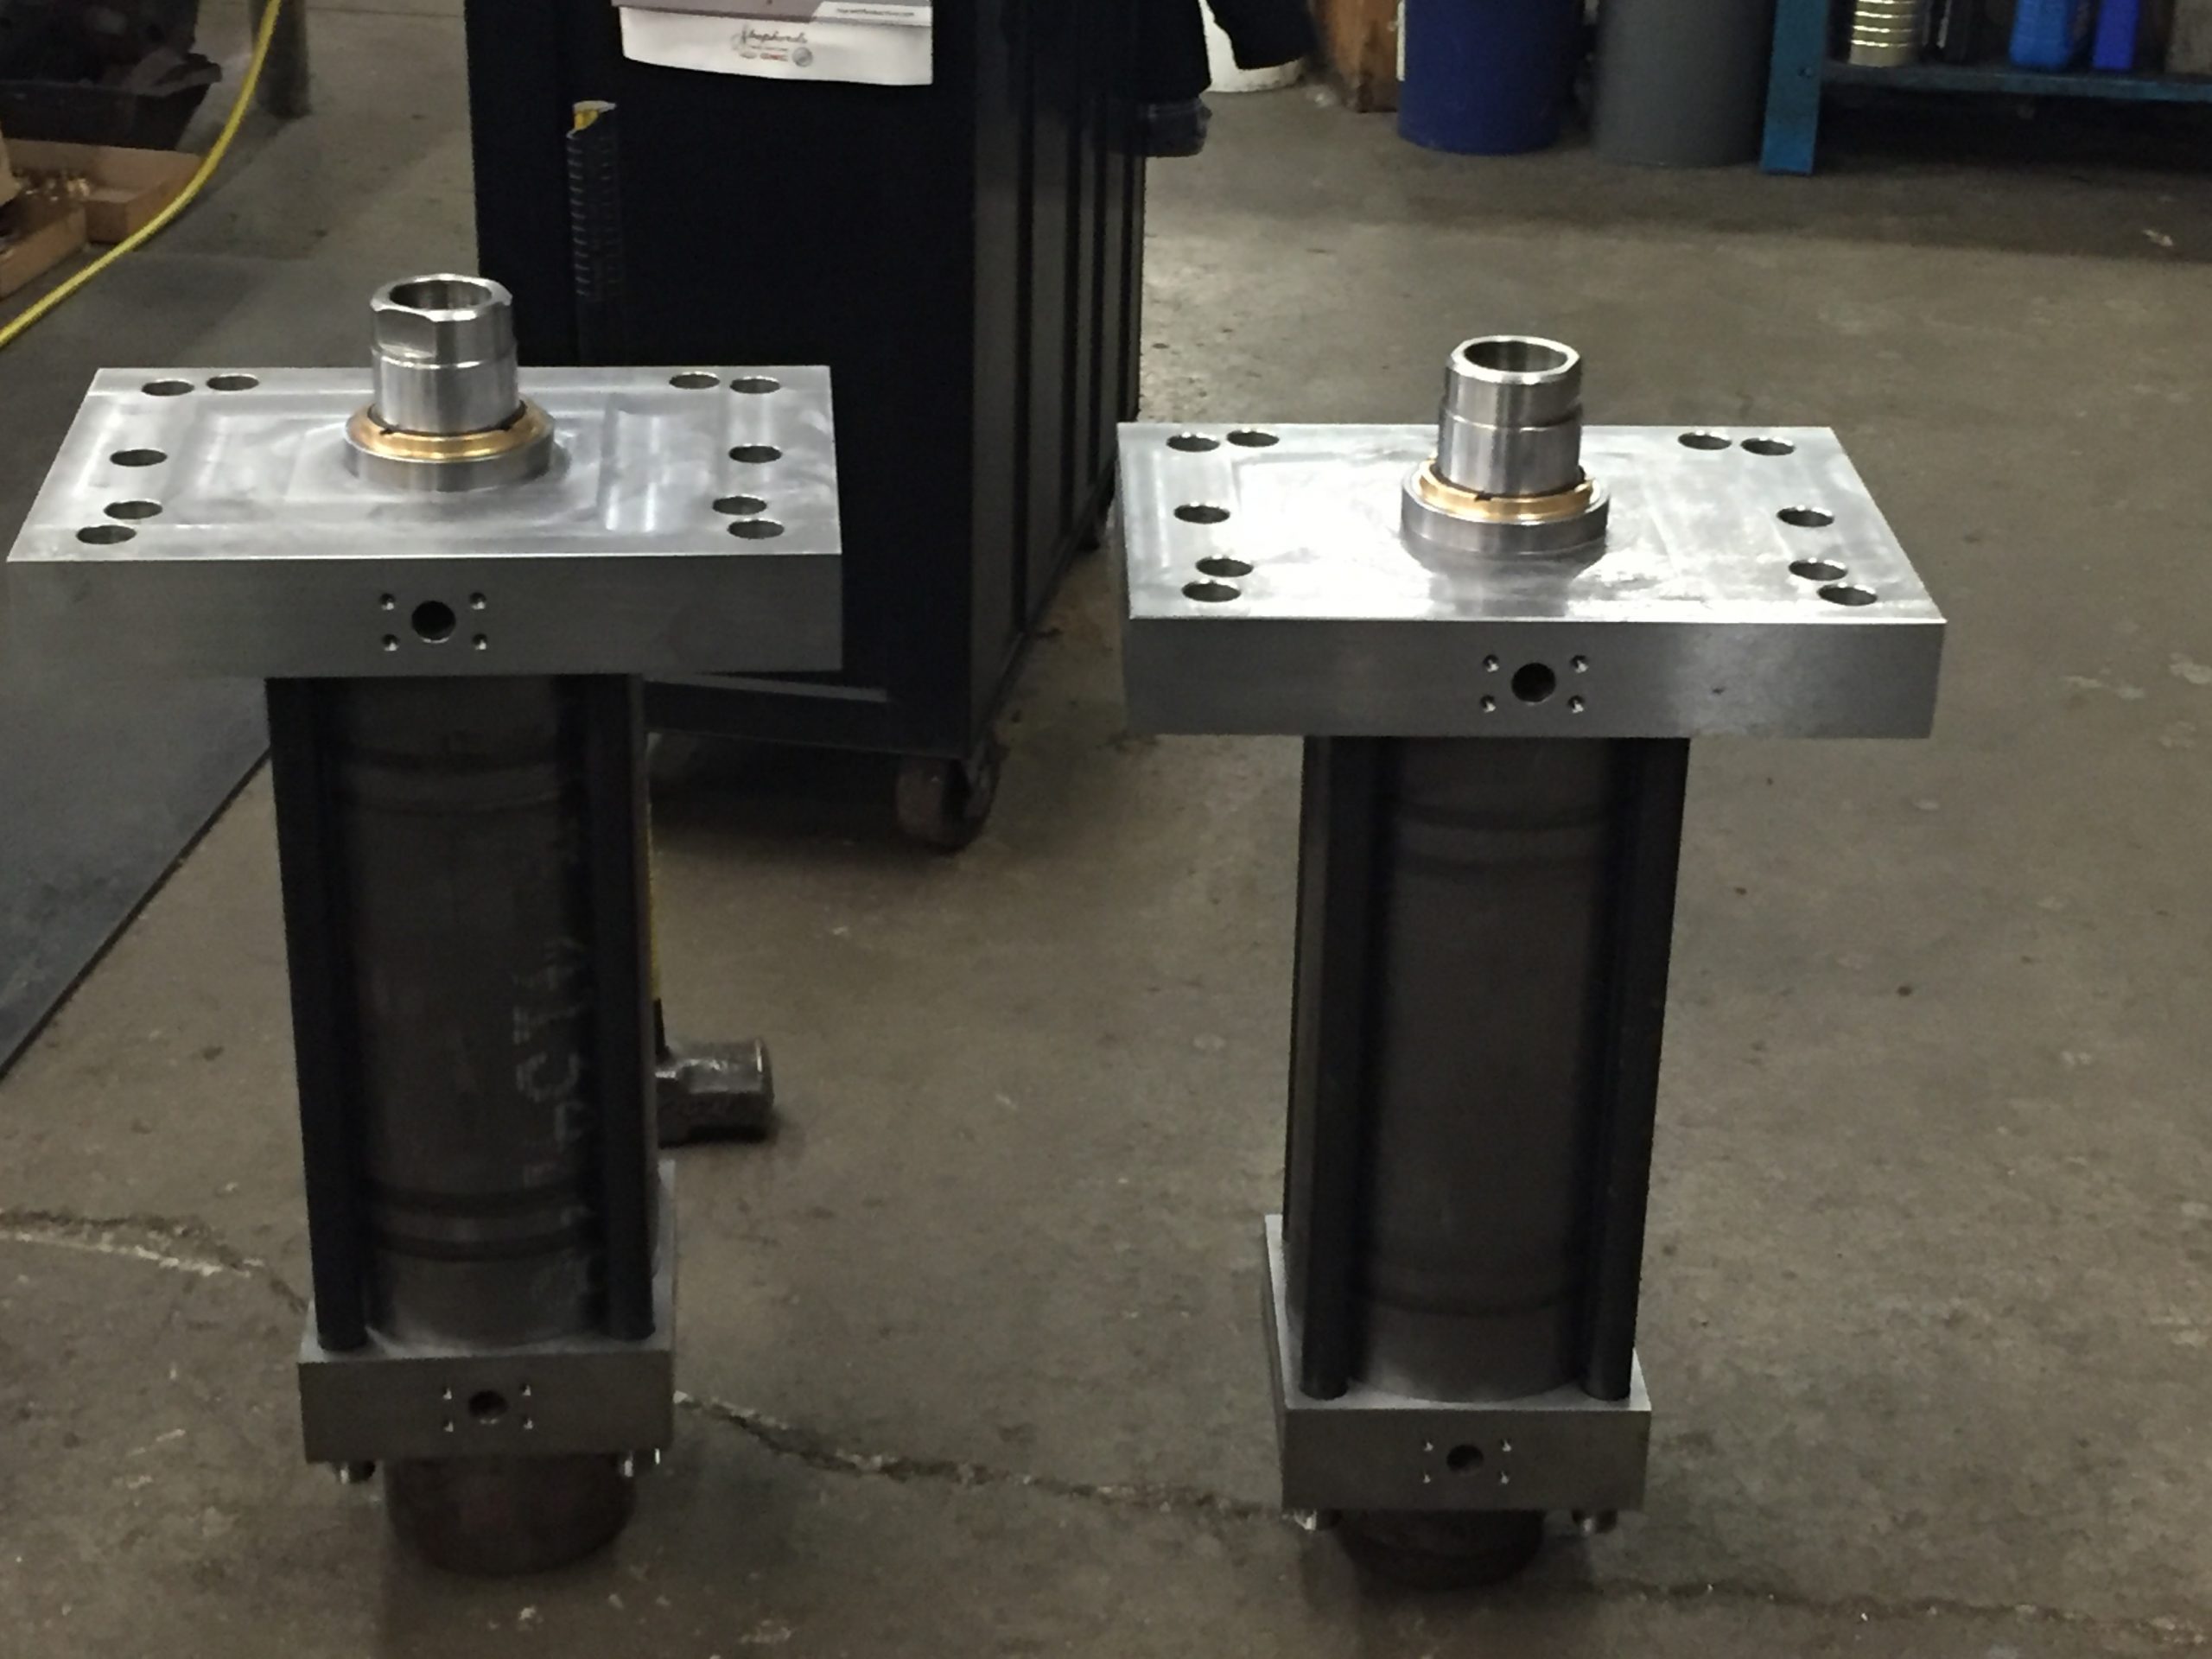 New hydraulic cylinders